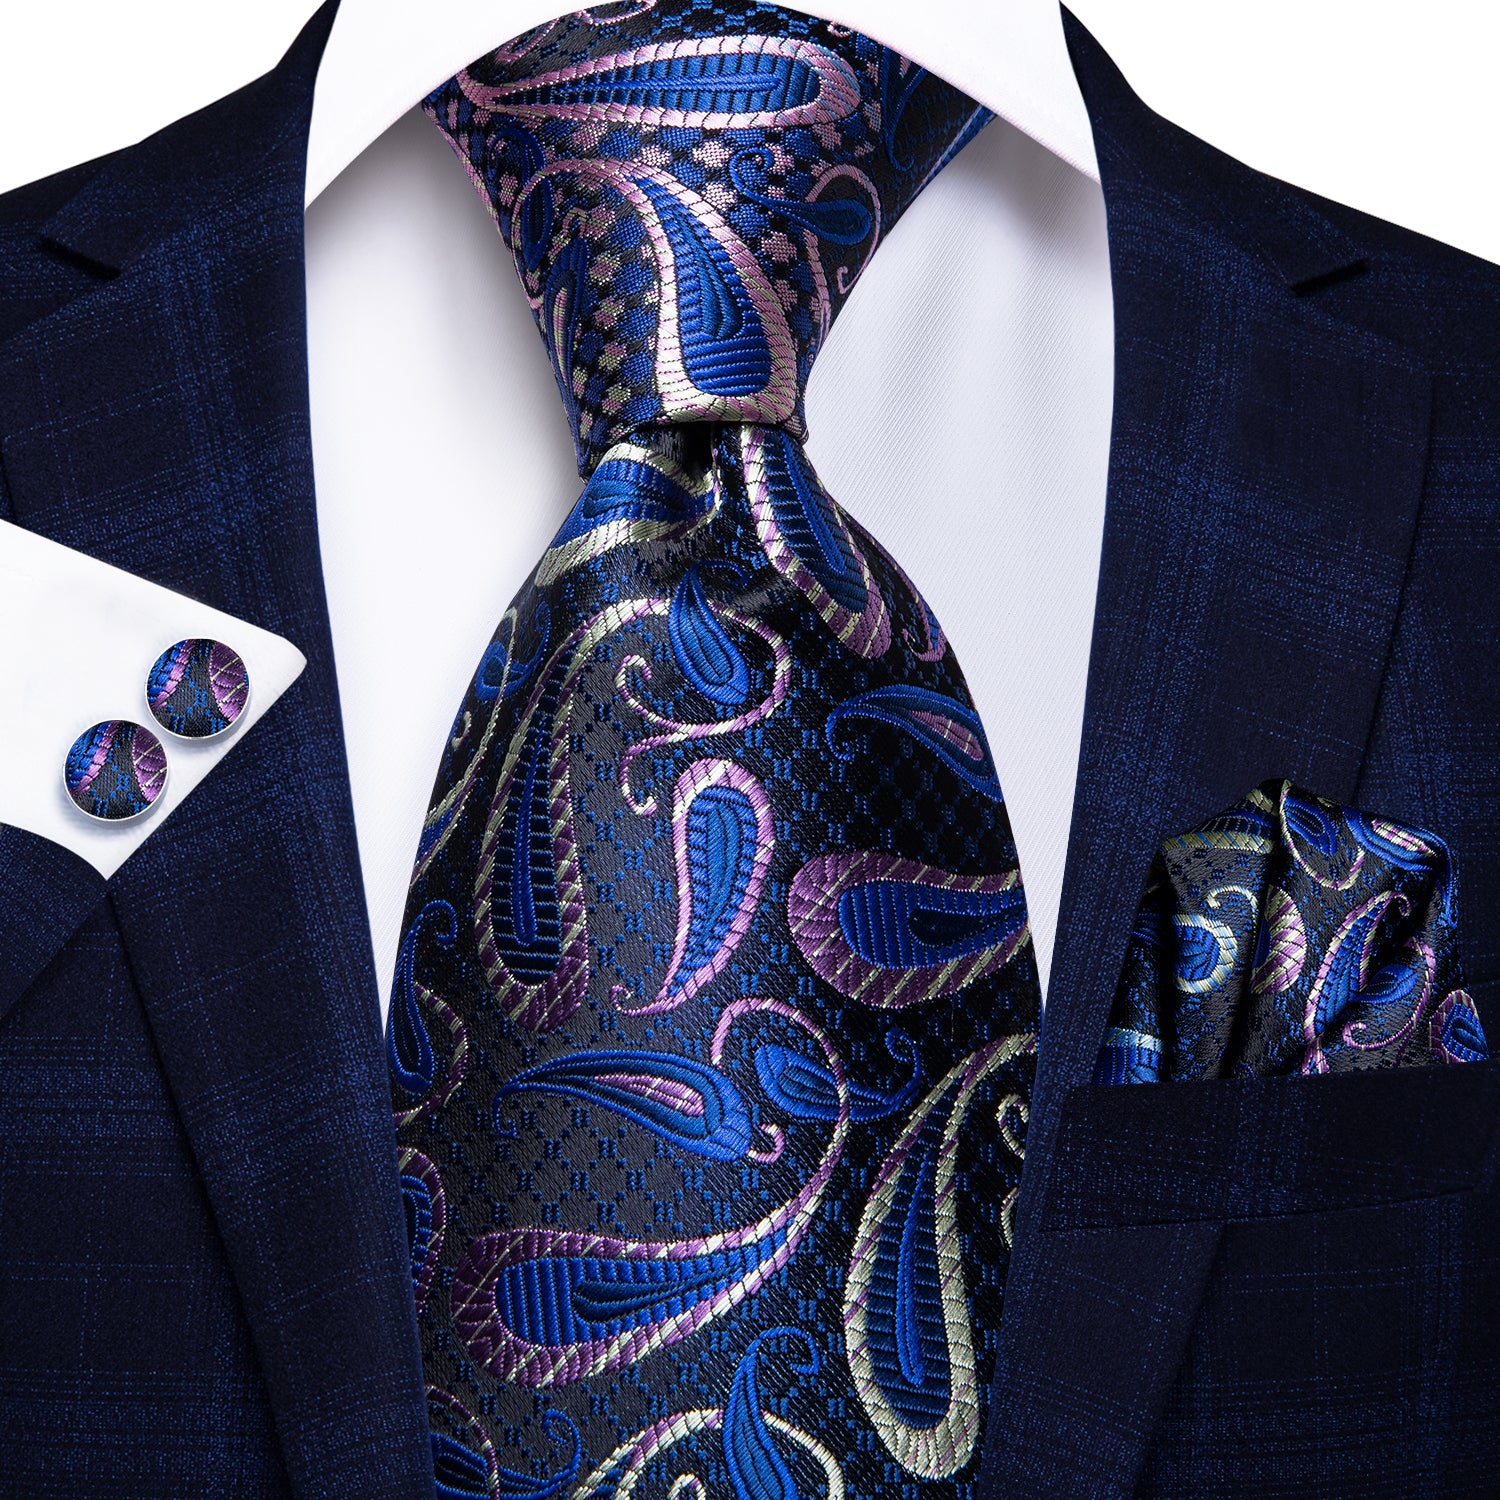 100% Silk Luxury Men's NeckTie Pocket Square Cufflinks Set